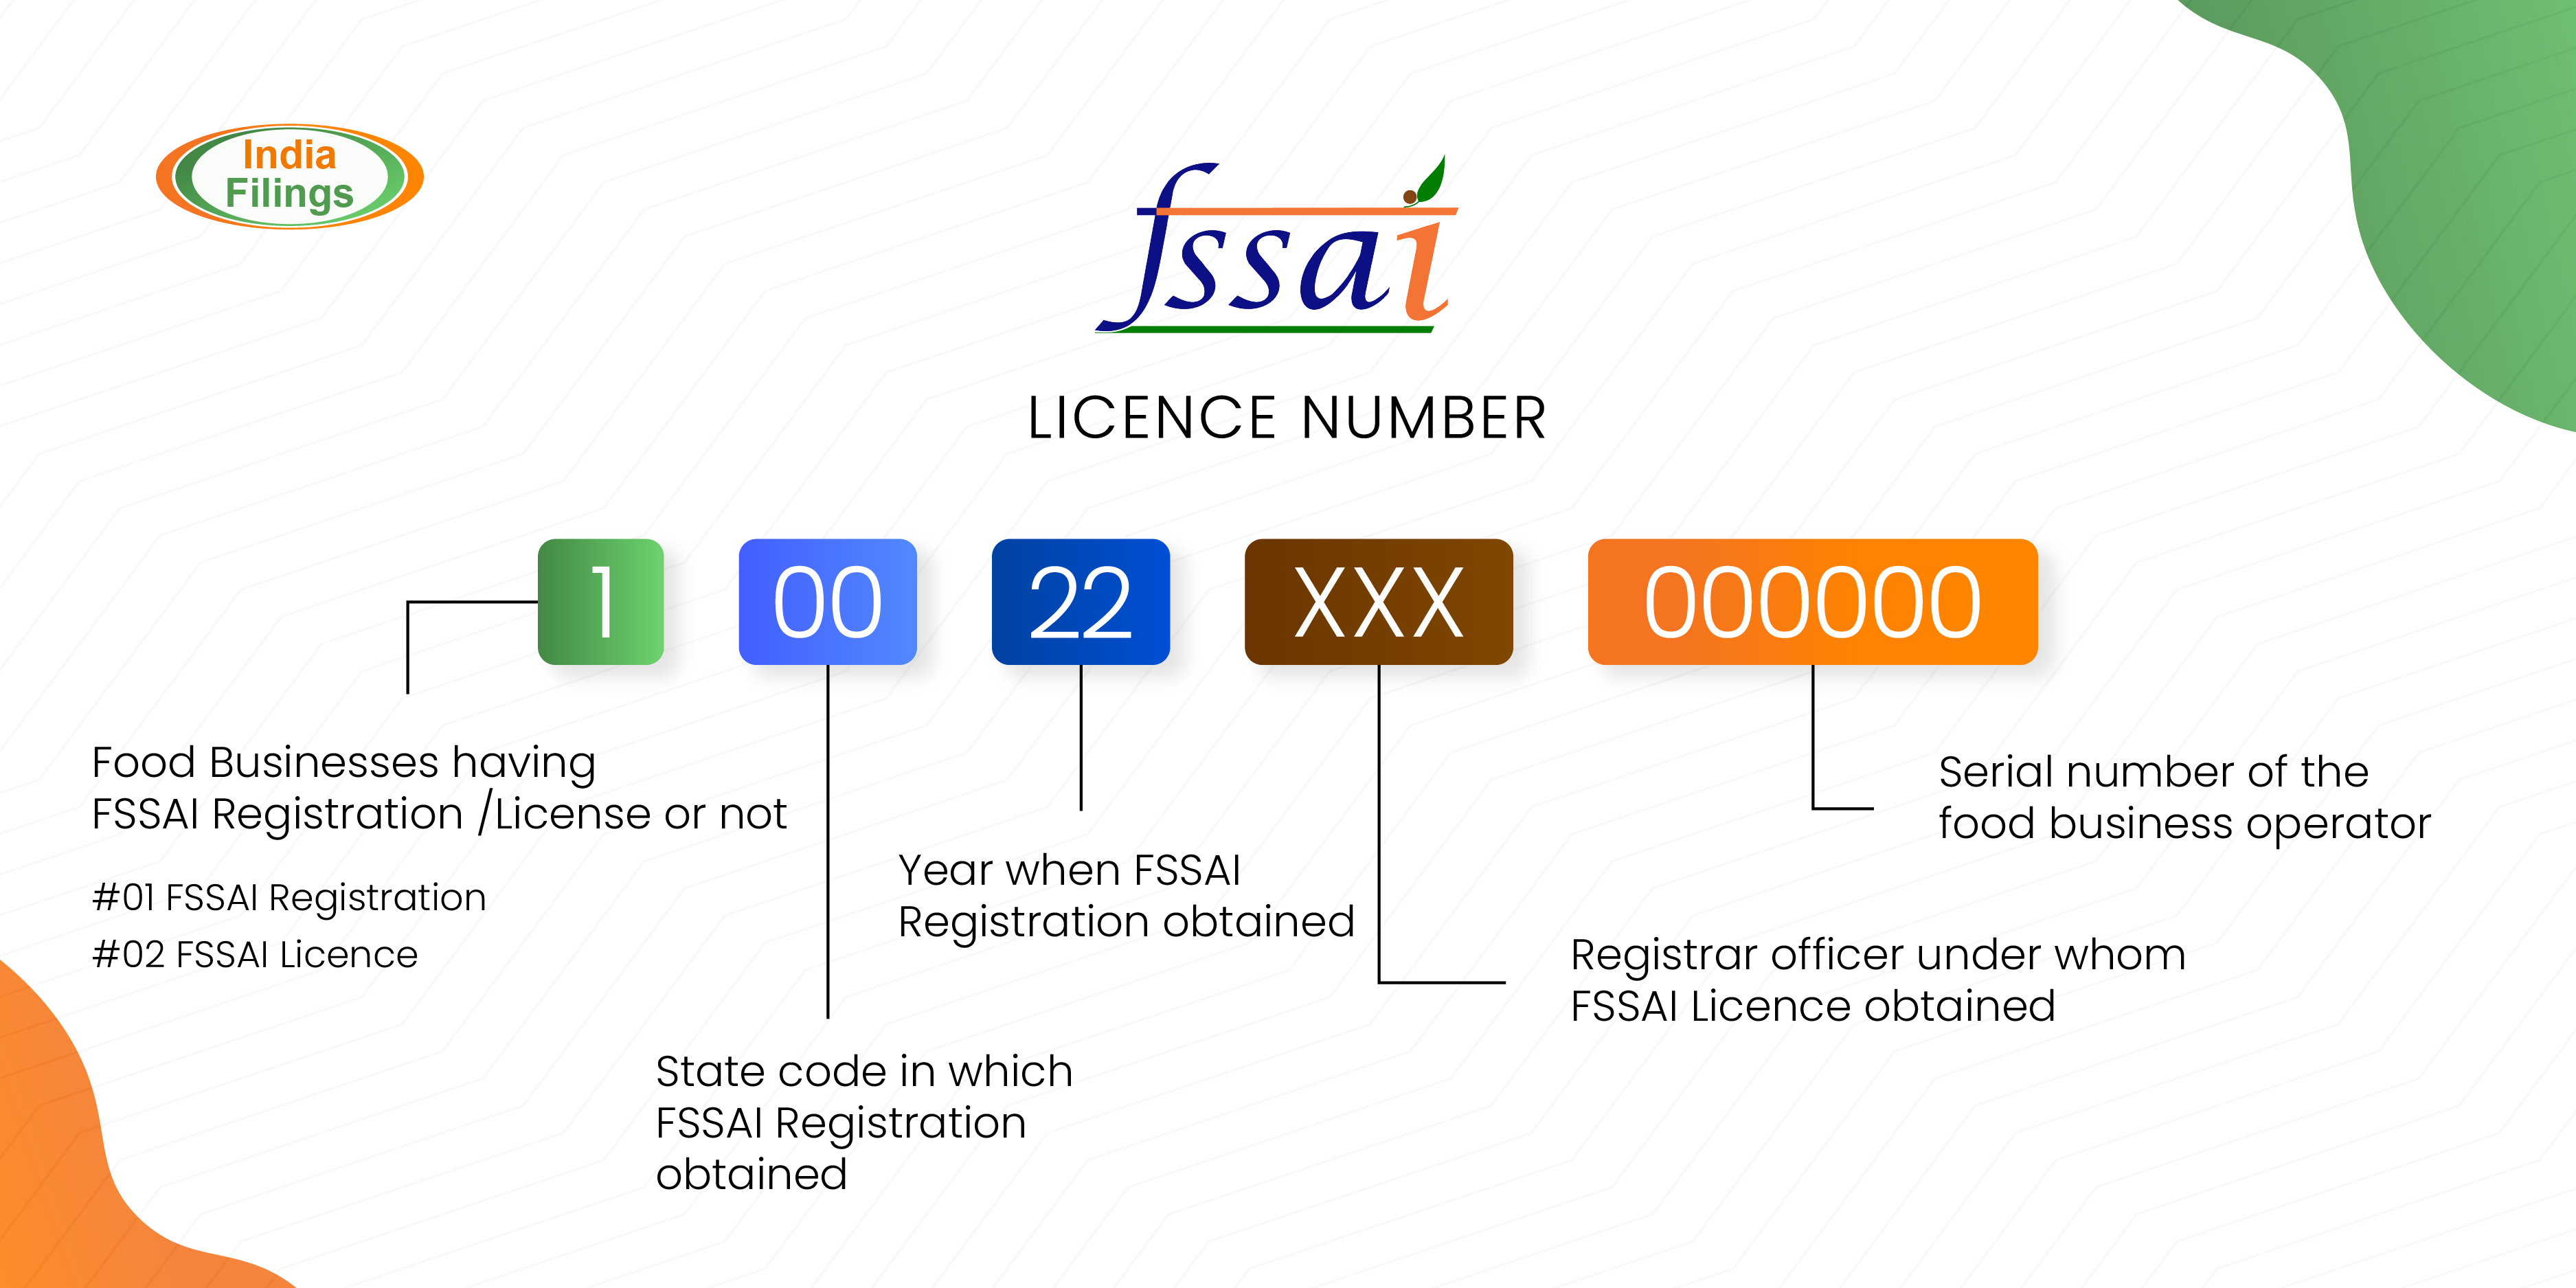 FSSAI License Number